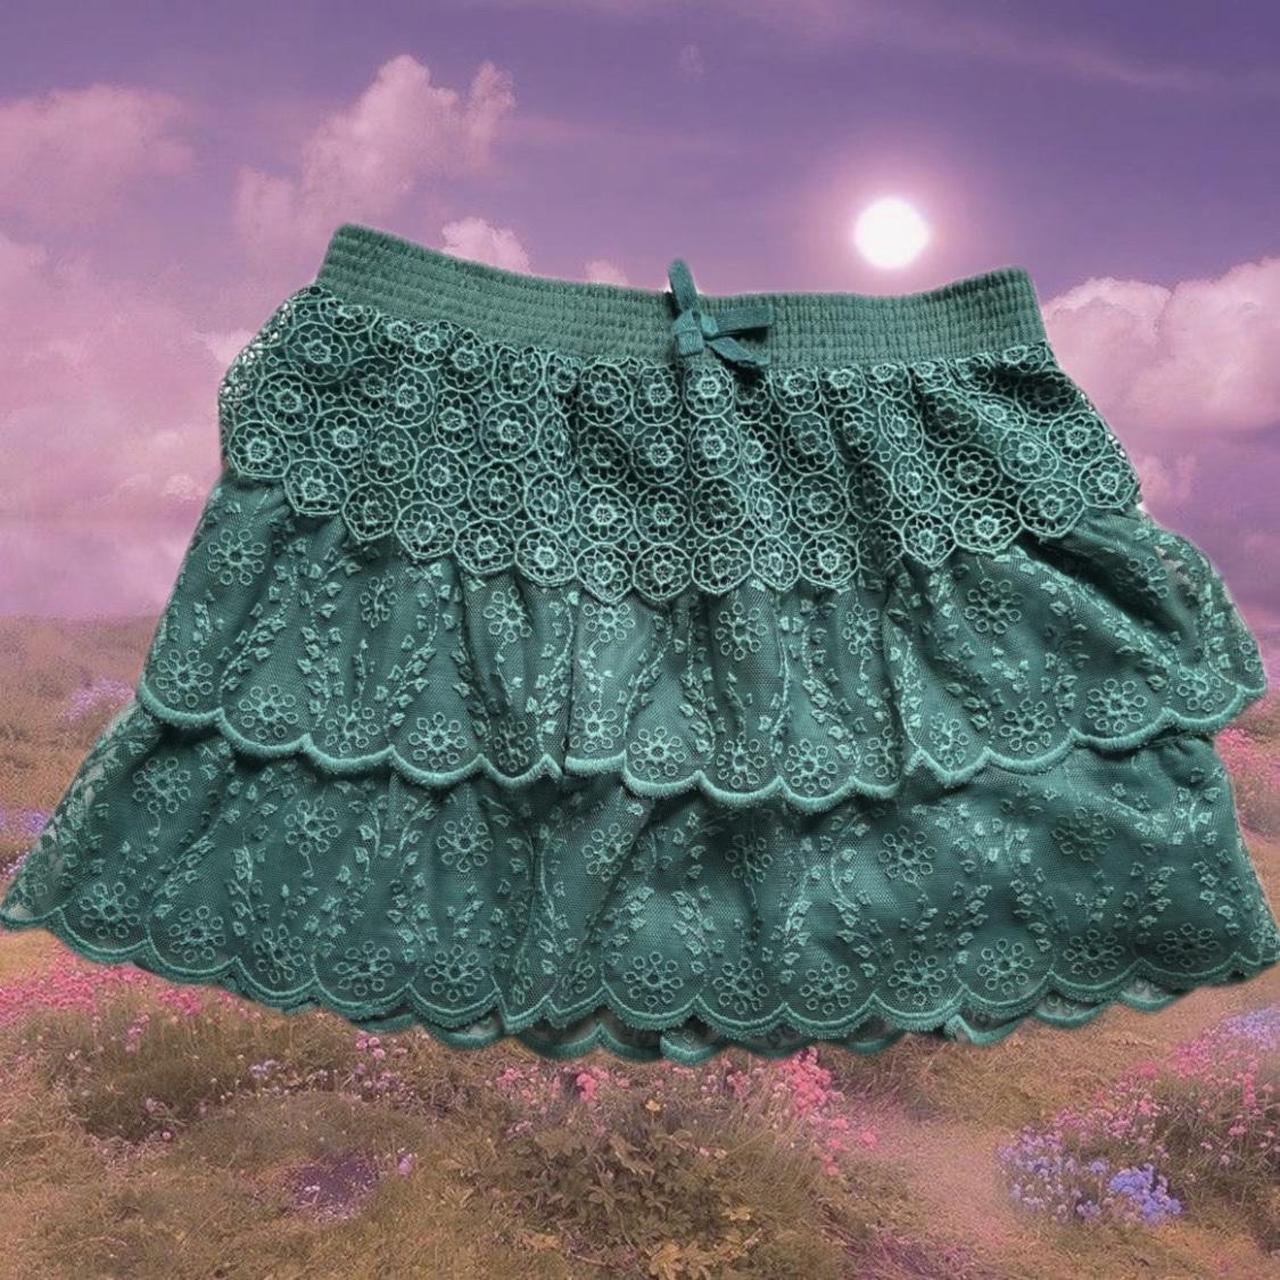 Green Mini Skirt 💗 Fairy Grunge Size 4 Will accept... - Depop